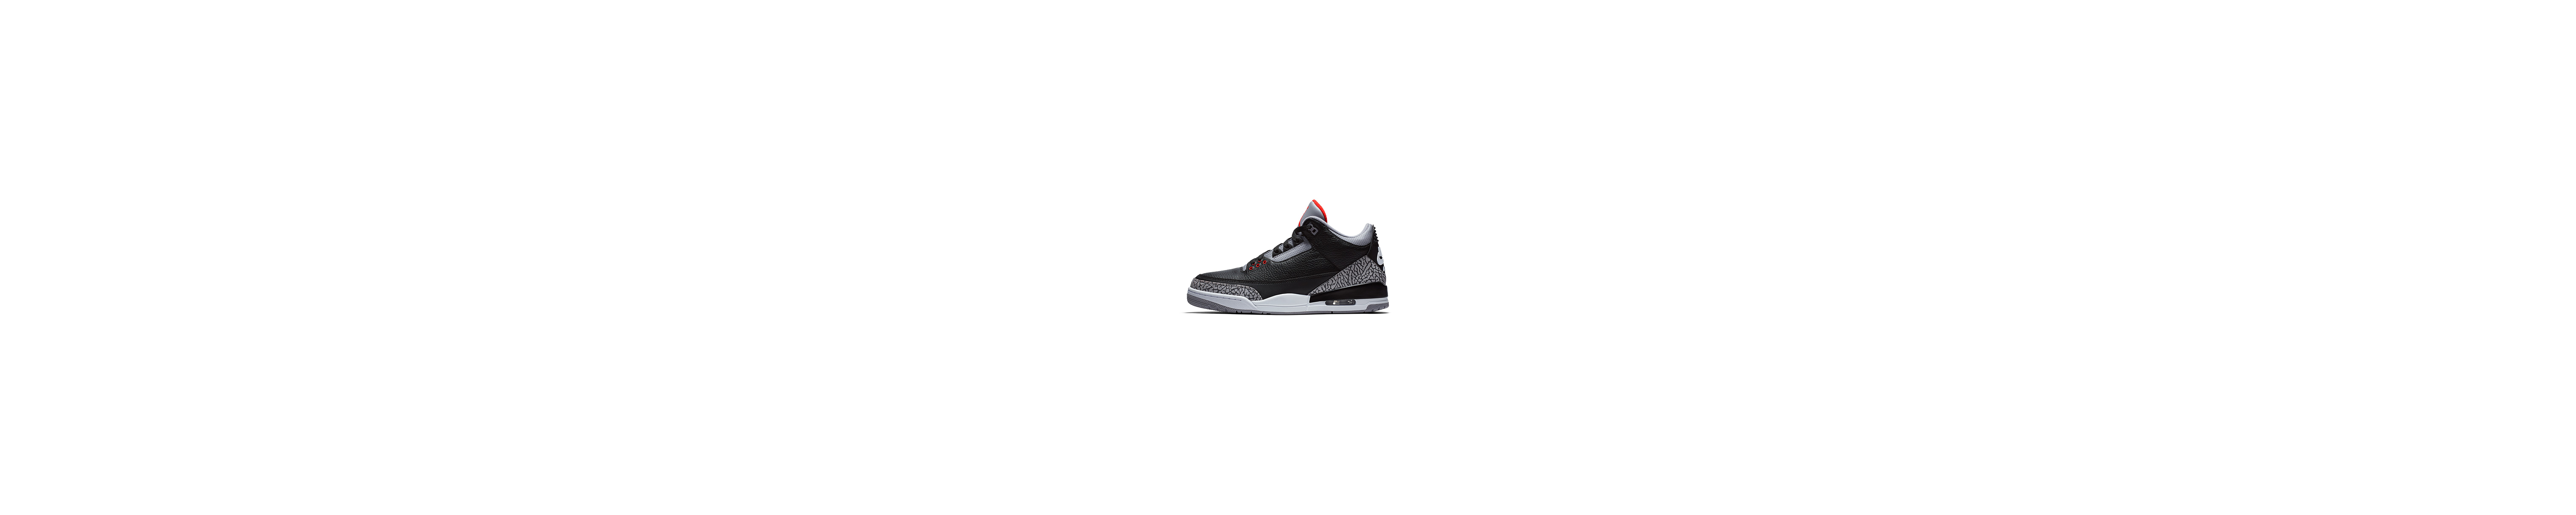 The Air Jordan 3 